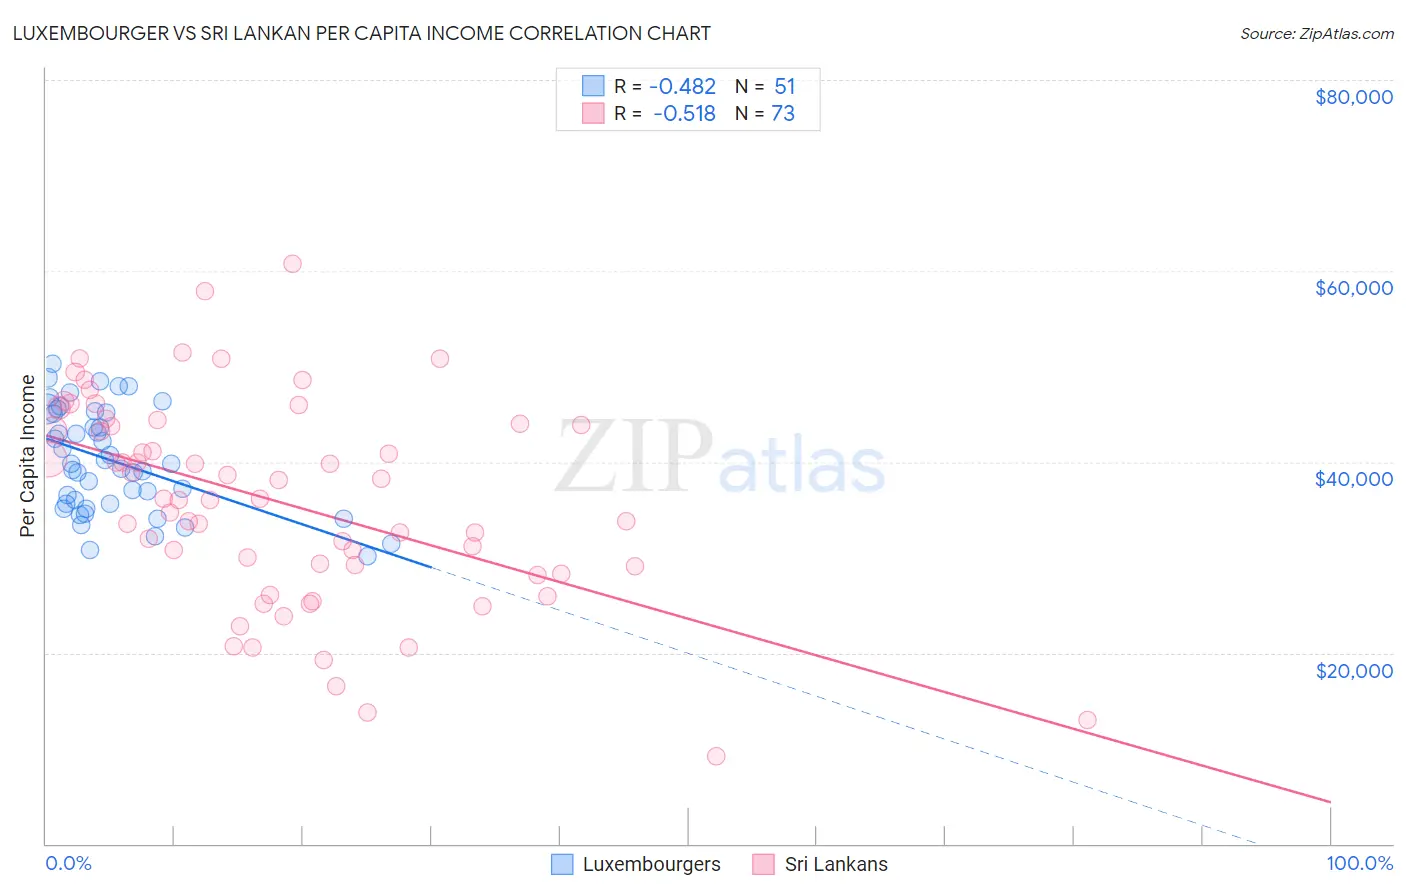 Luxembourger vs Sri Lankan Per Capita Income